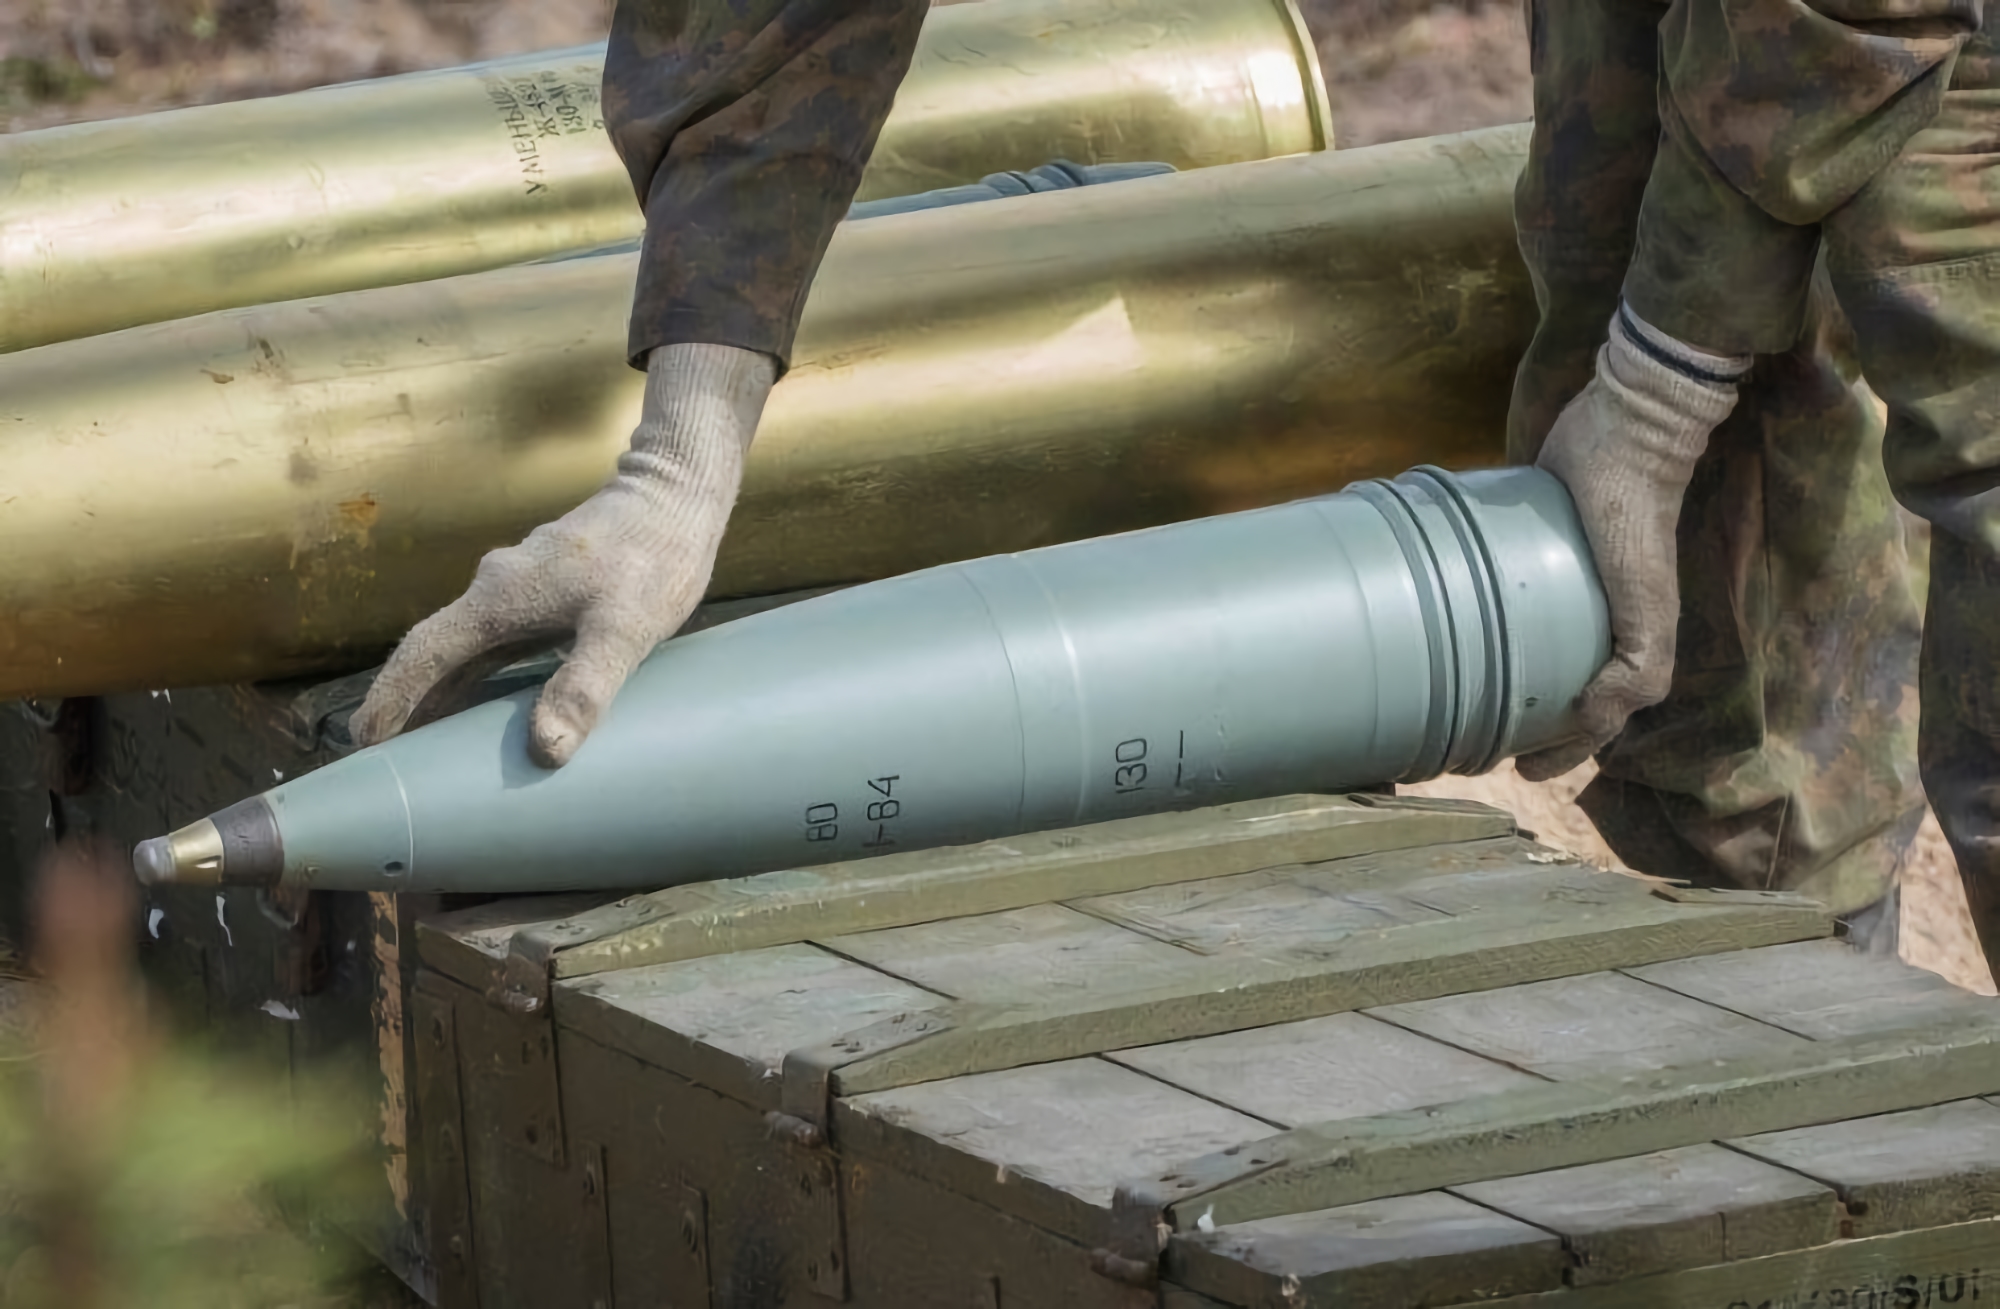 L'Ucraina, insieme a un partner, sta costruendo un impianto per la produzione di munizioni standard della NATO